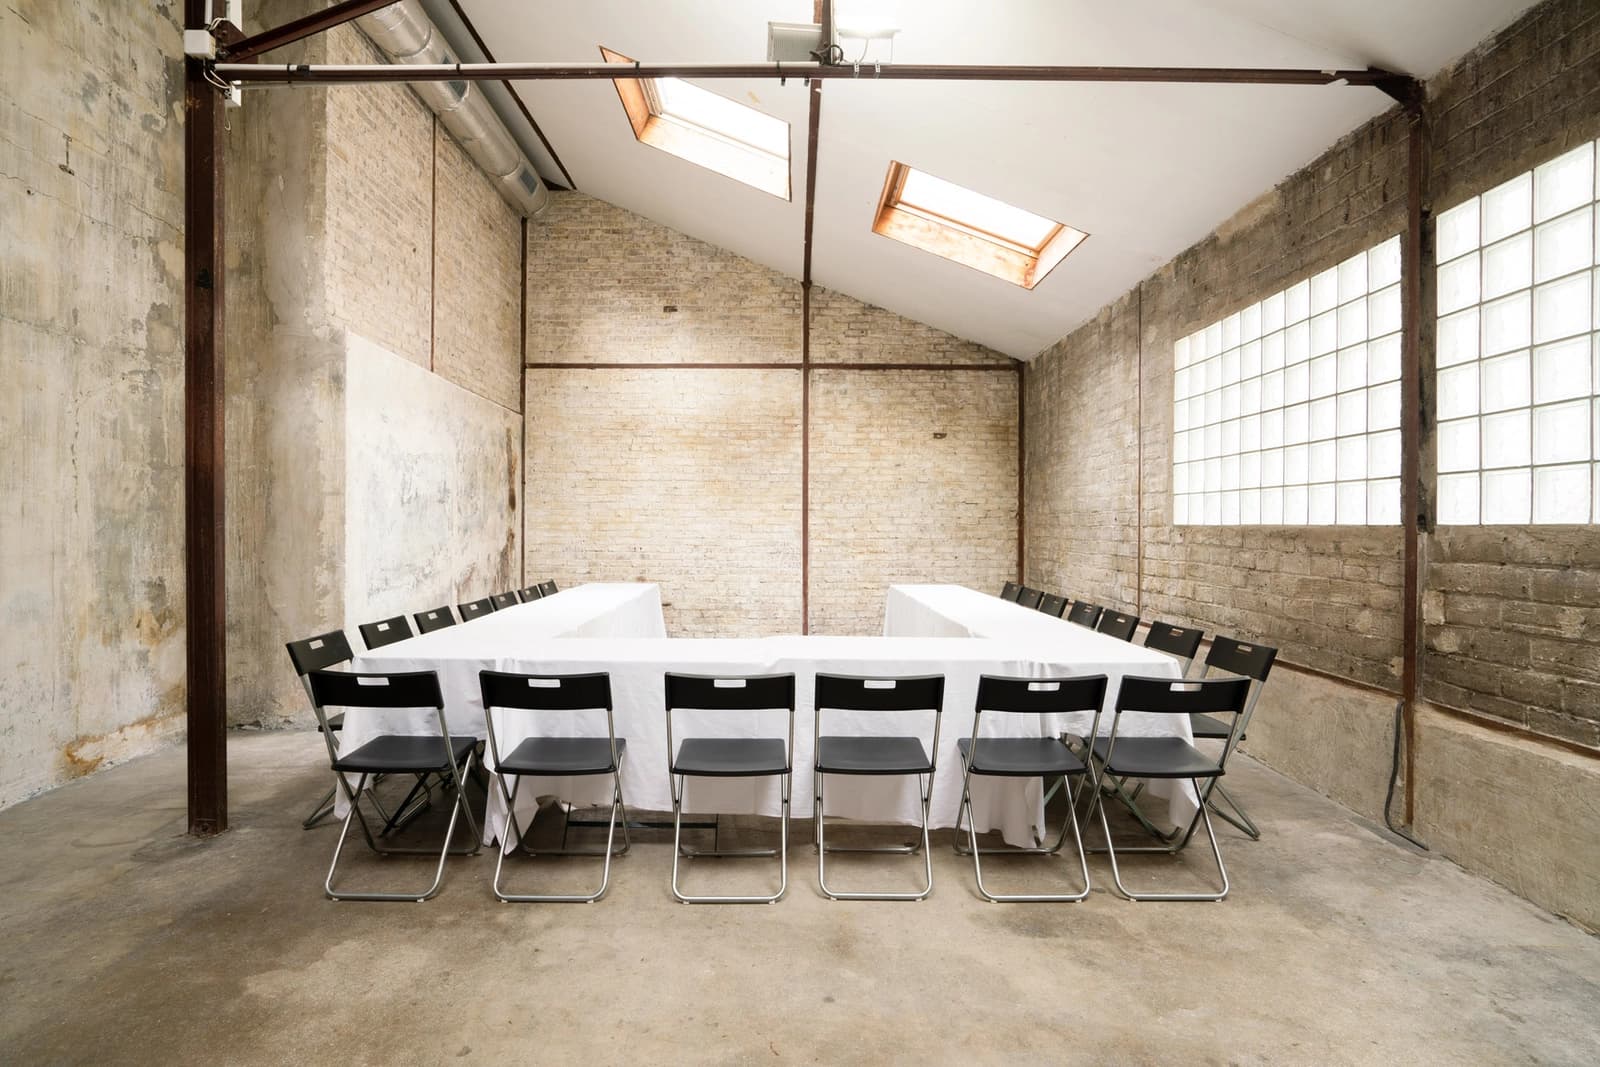 Meeting room in Industrial-style space - 0